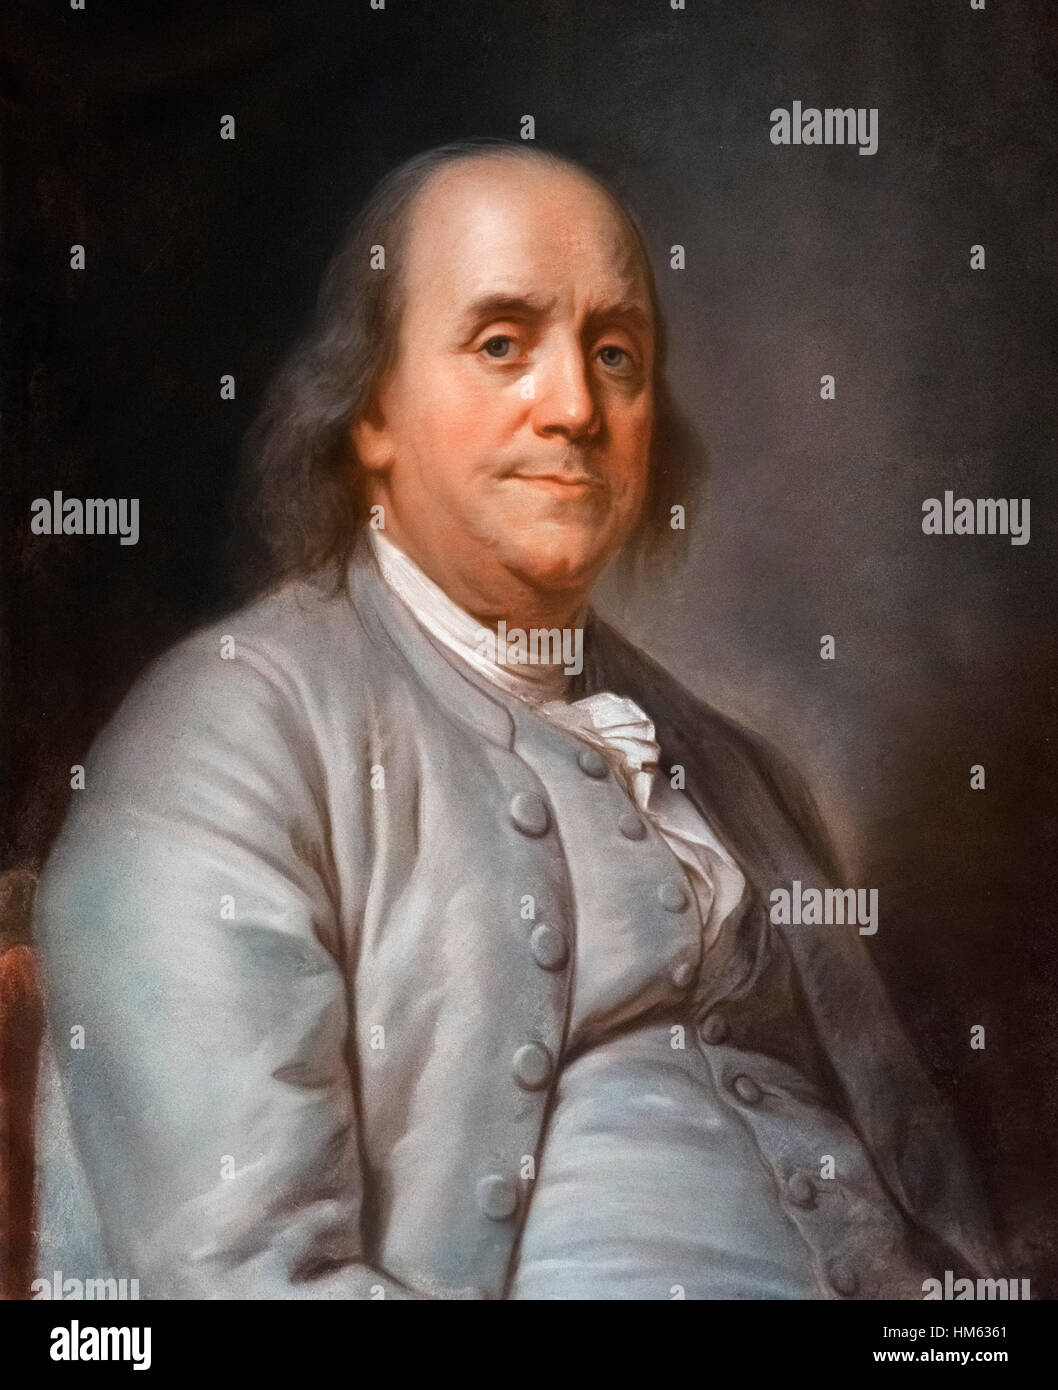 Ben Franklin. Porträt von Duplessis - der graue Mantel Gemälde - Öl auf Leinwand, um 1777/8 Stockfoto